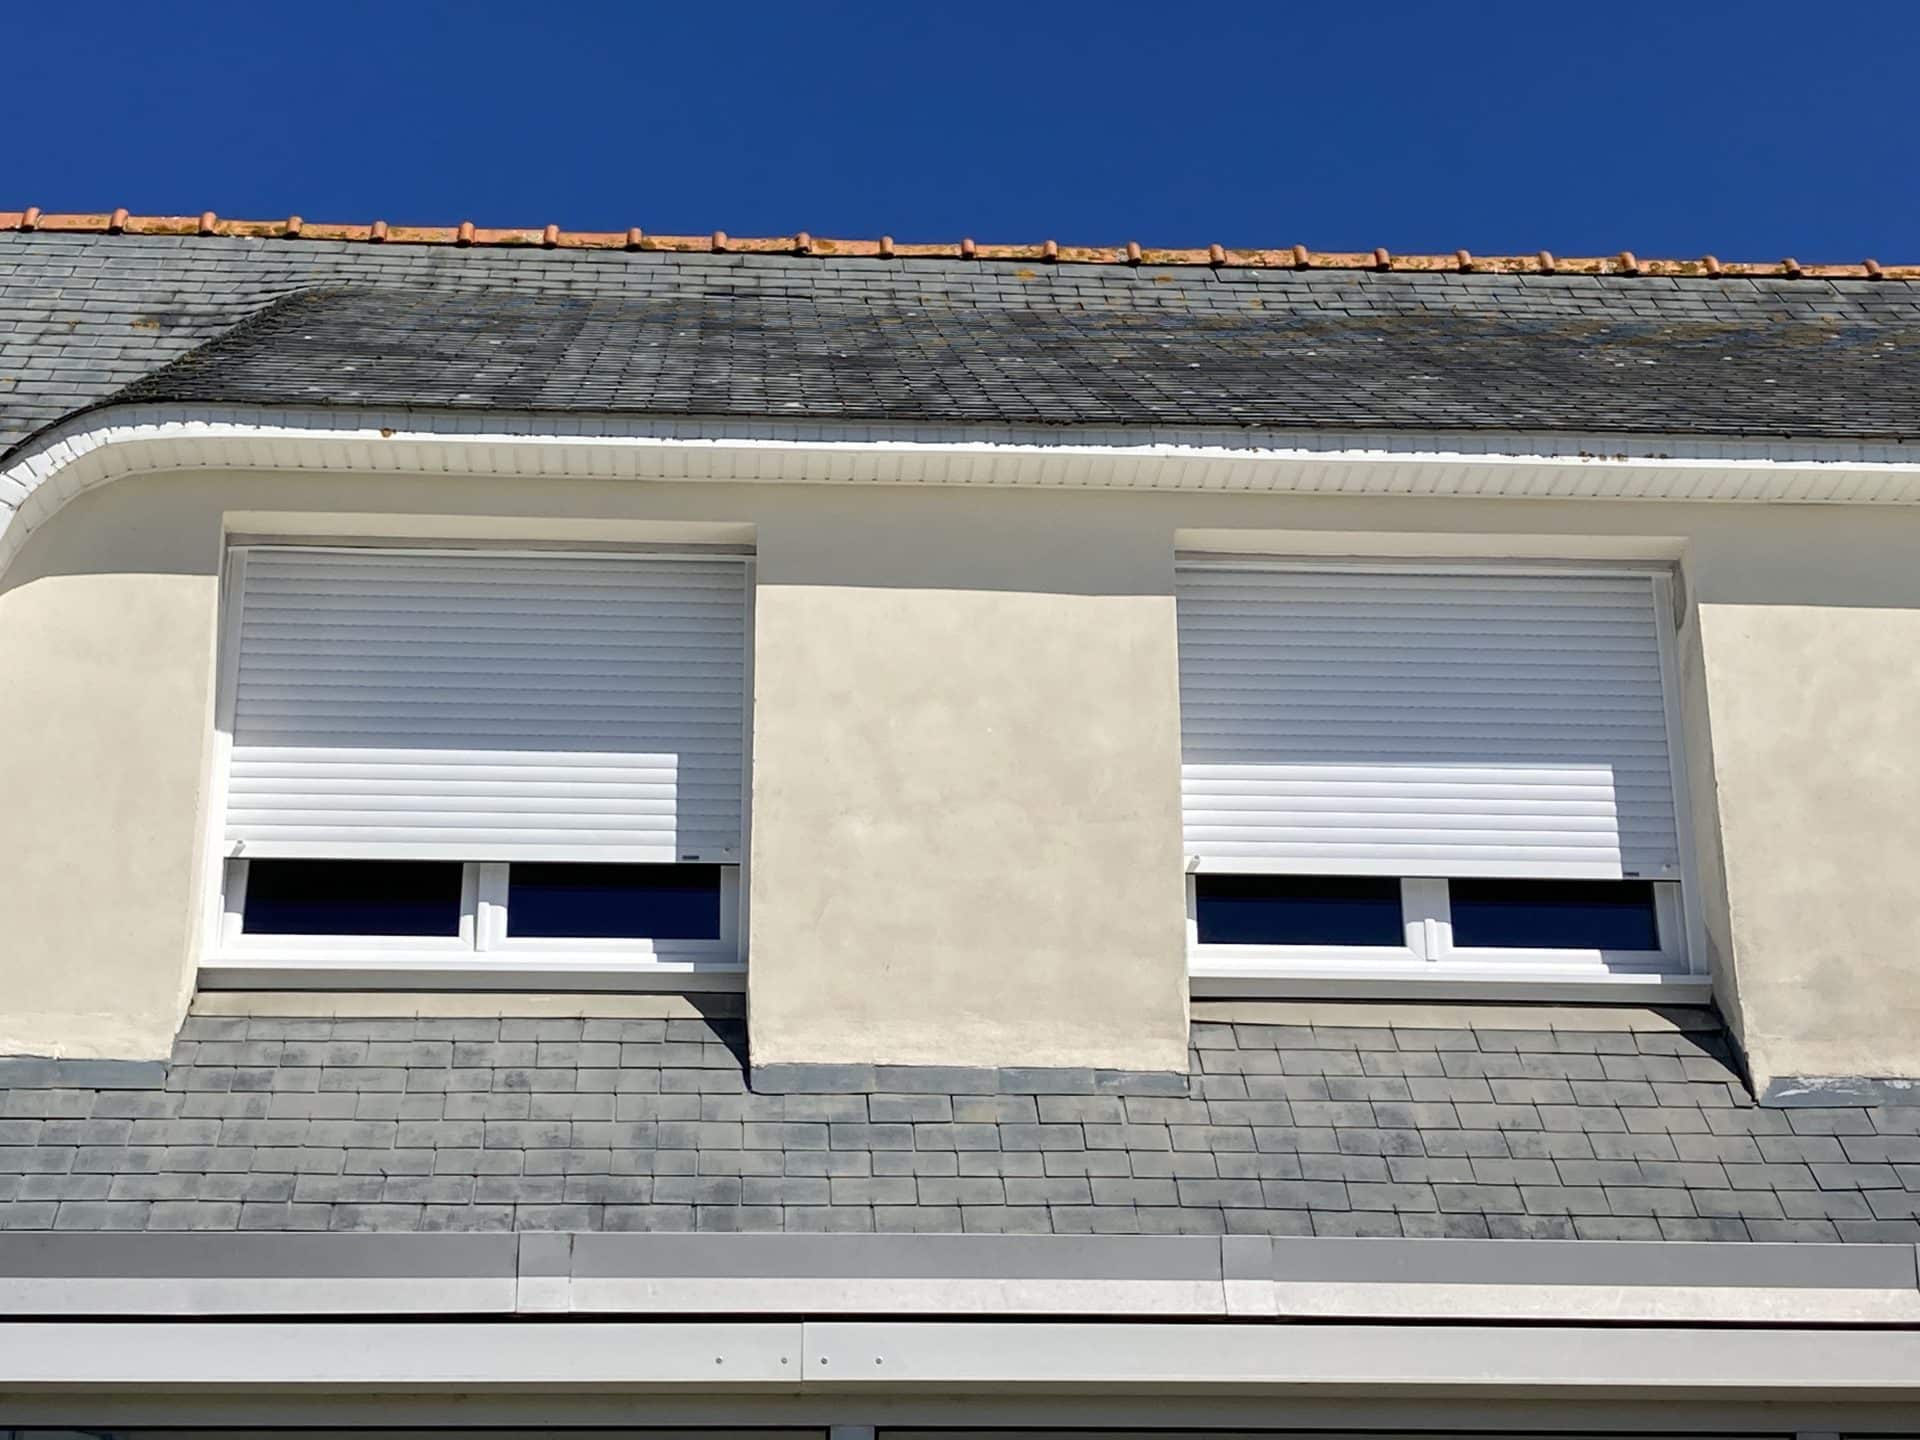 Renovation fenetres PVC Treffiagat 1 - Rénovation fenêtres PVC Tréffiagat - Quimper Brest